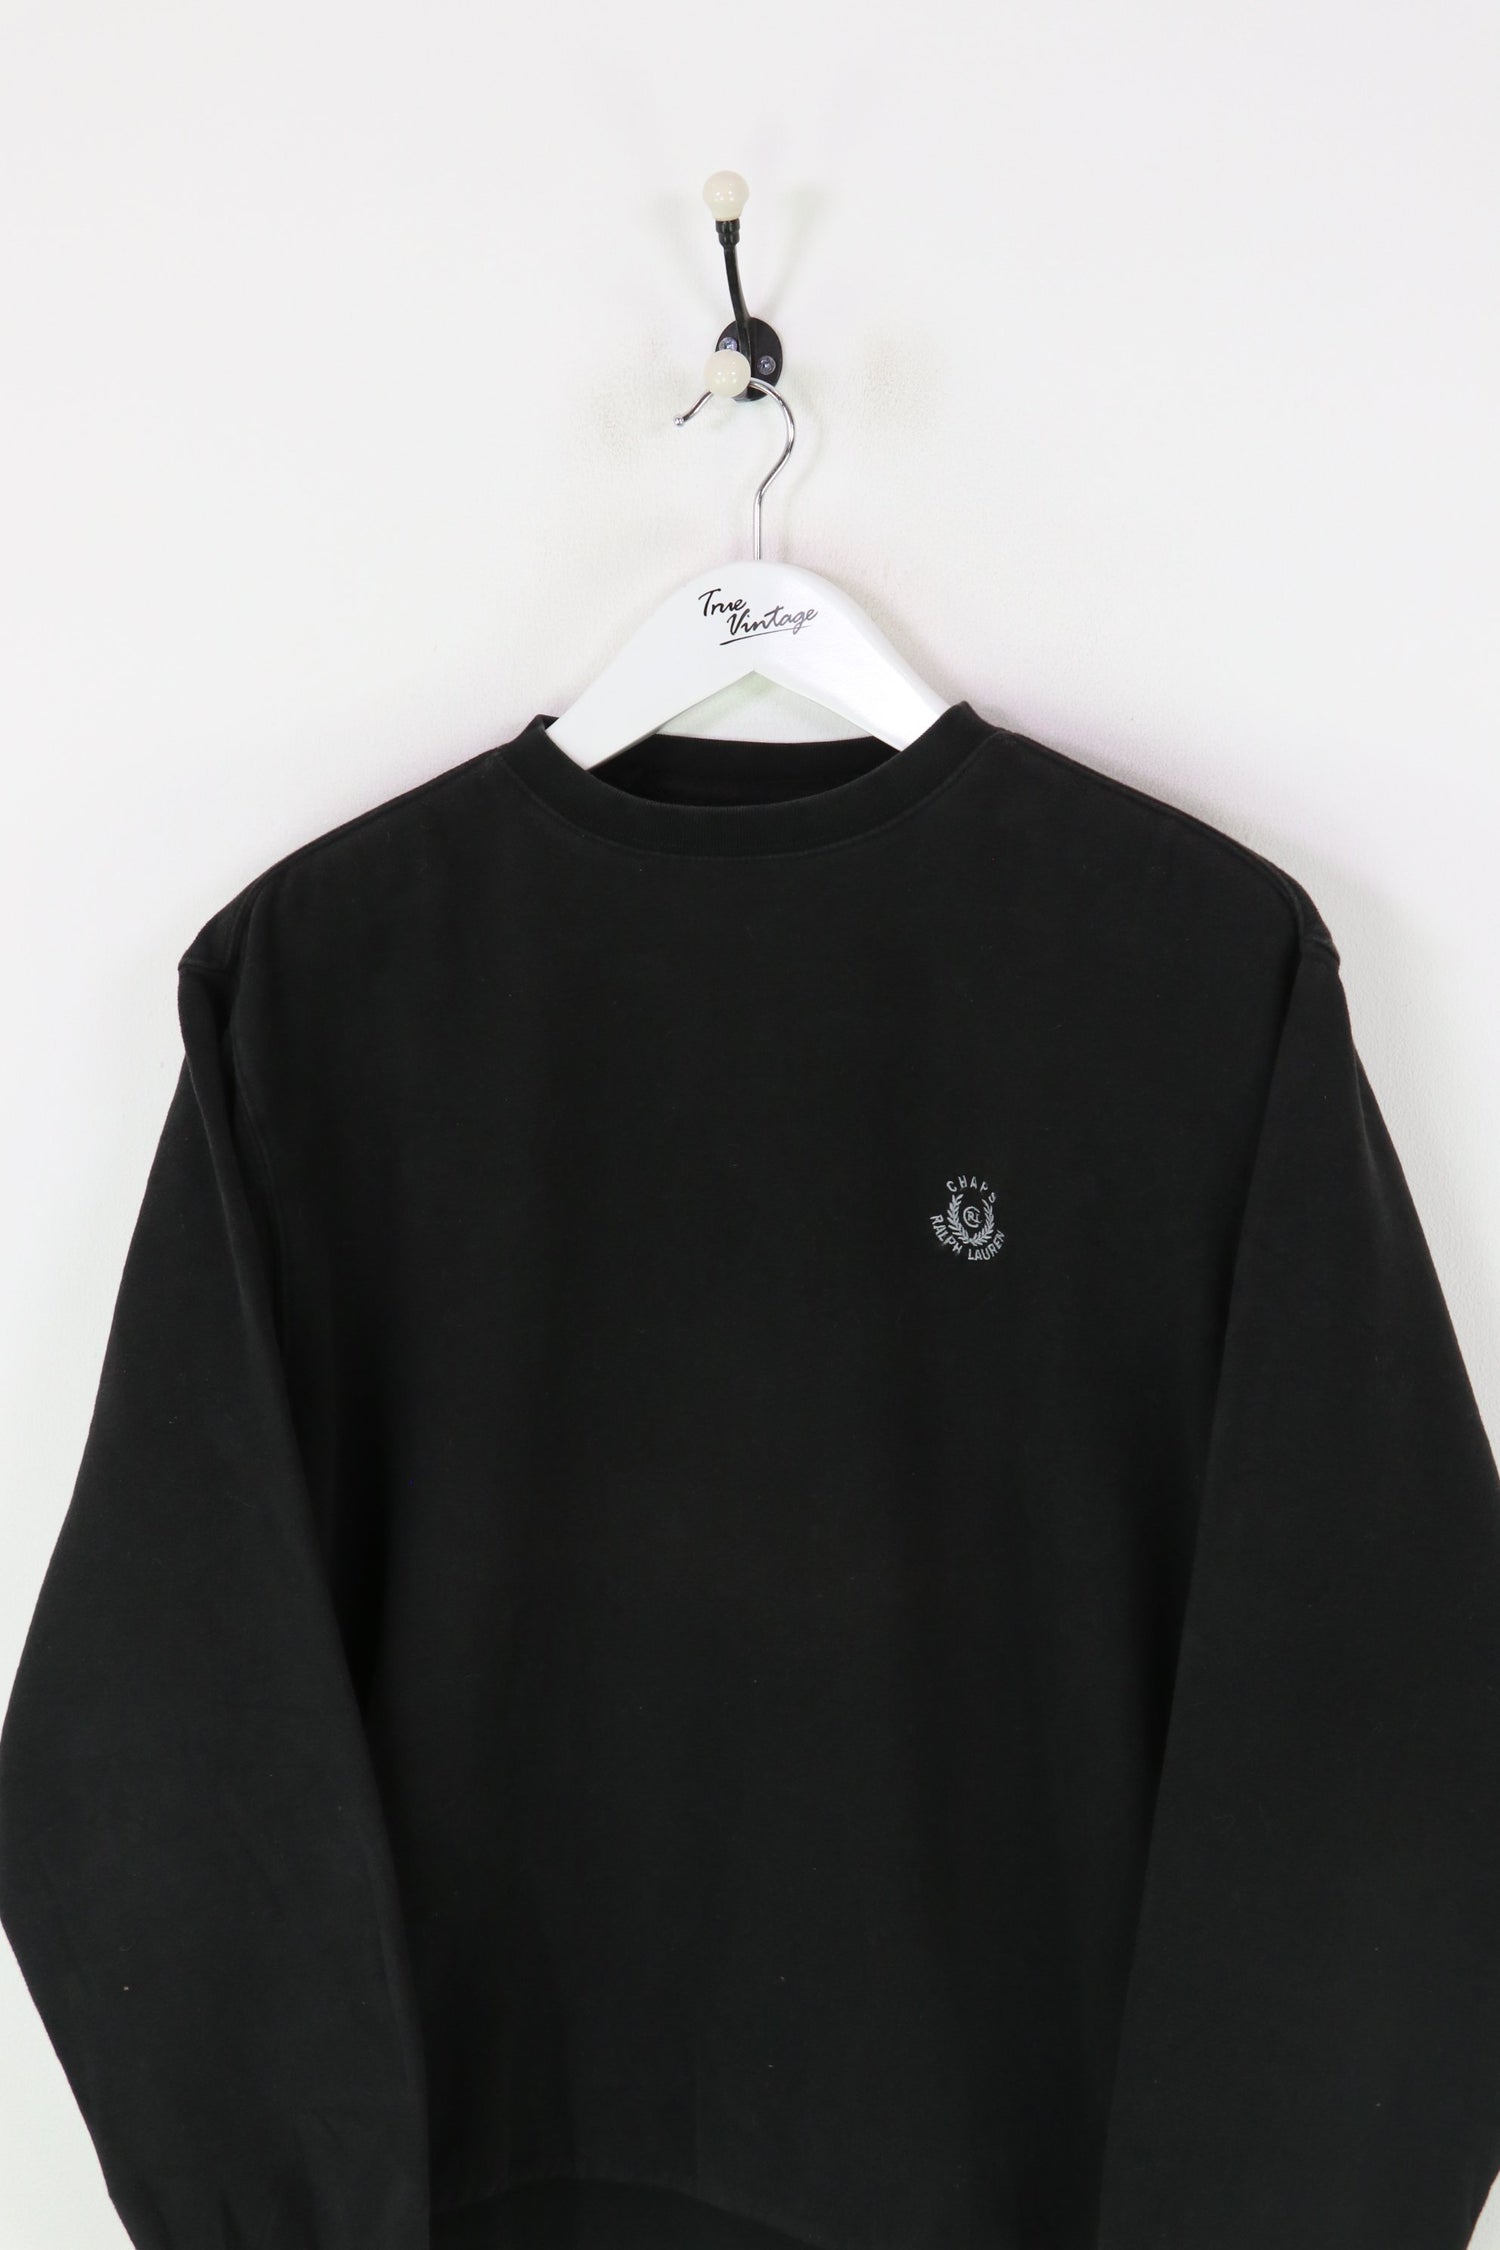 Ralph Lauren Chaps Sweatshirt Black Medium